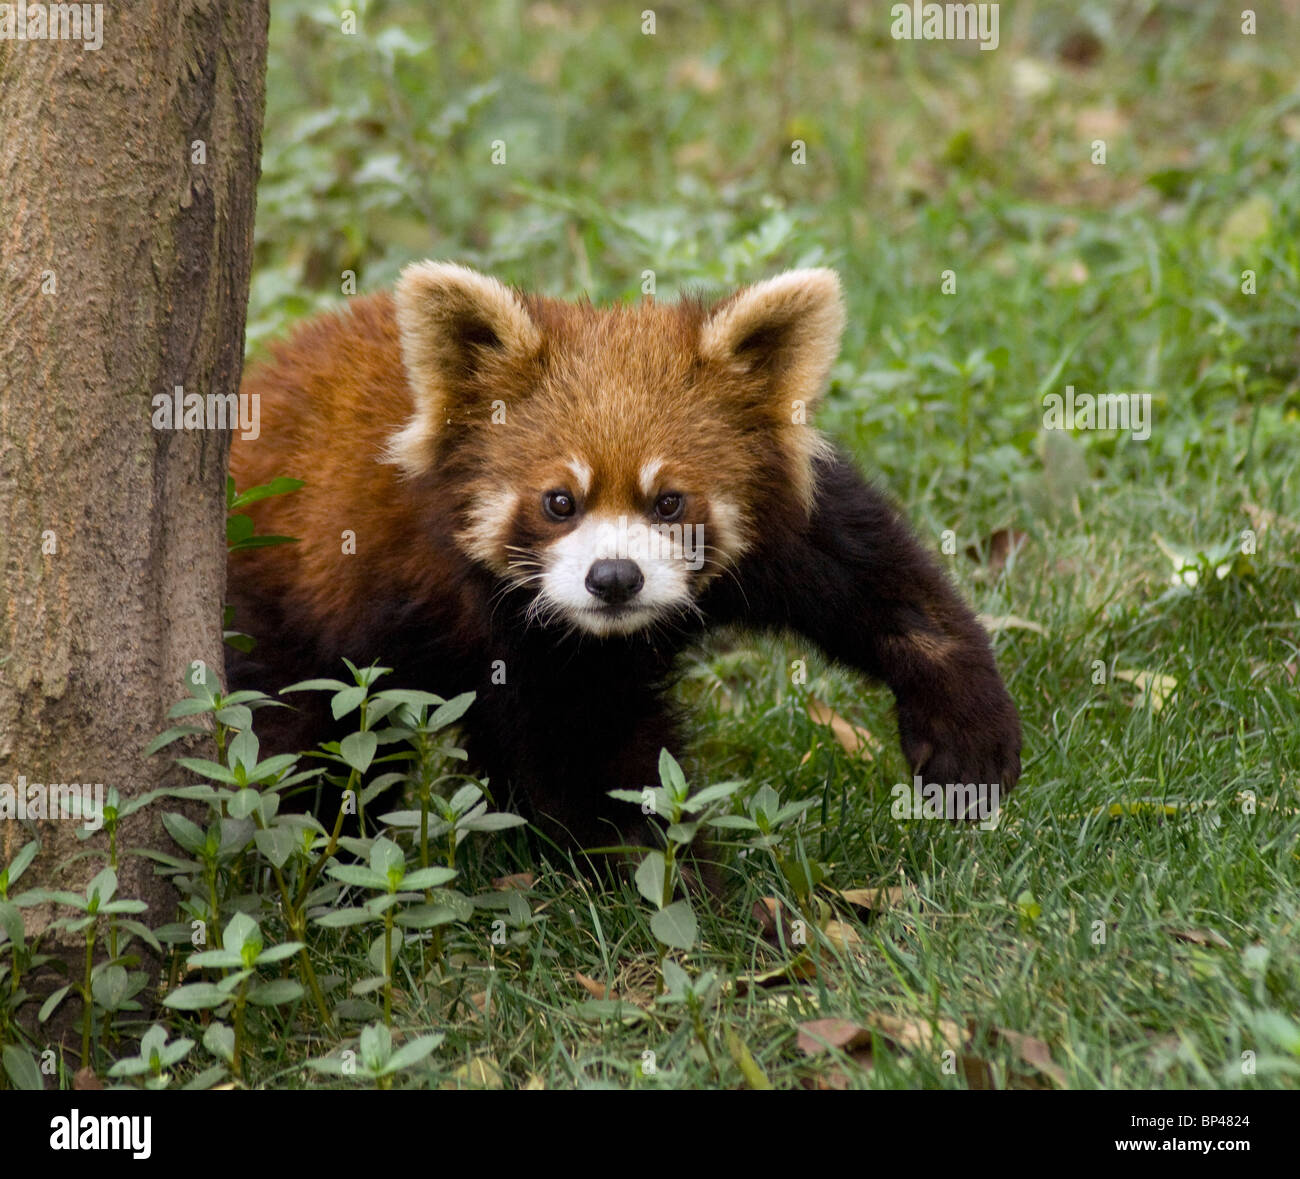 Panda rouge ou moins fait une pause pour élever une patte avant Chine Banque D'Images